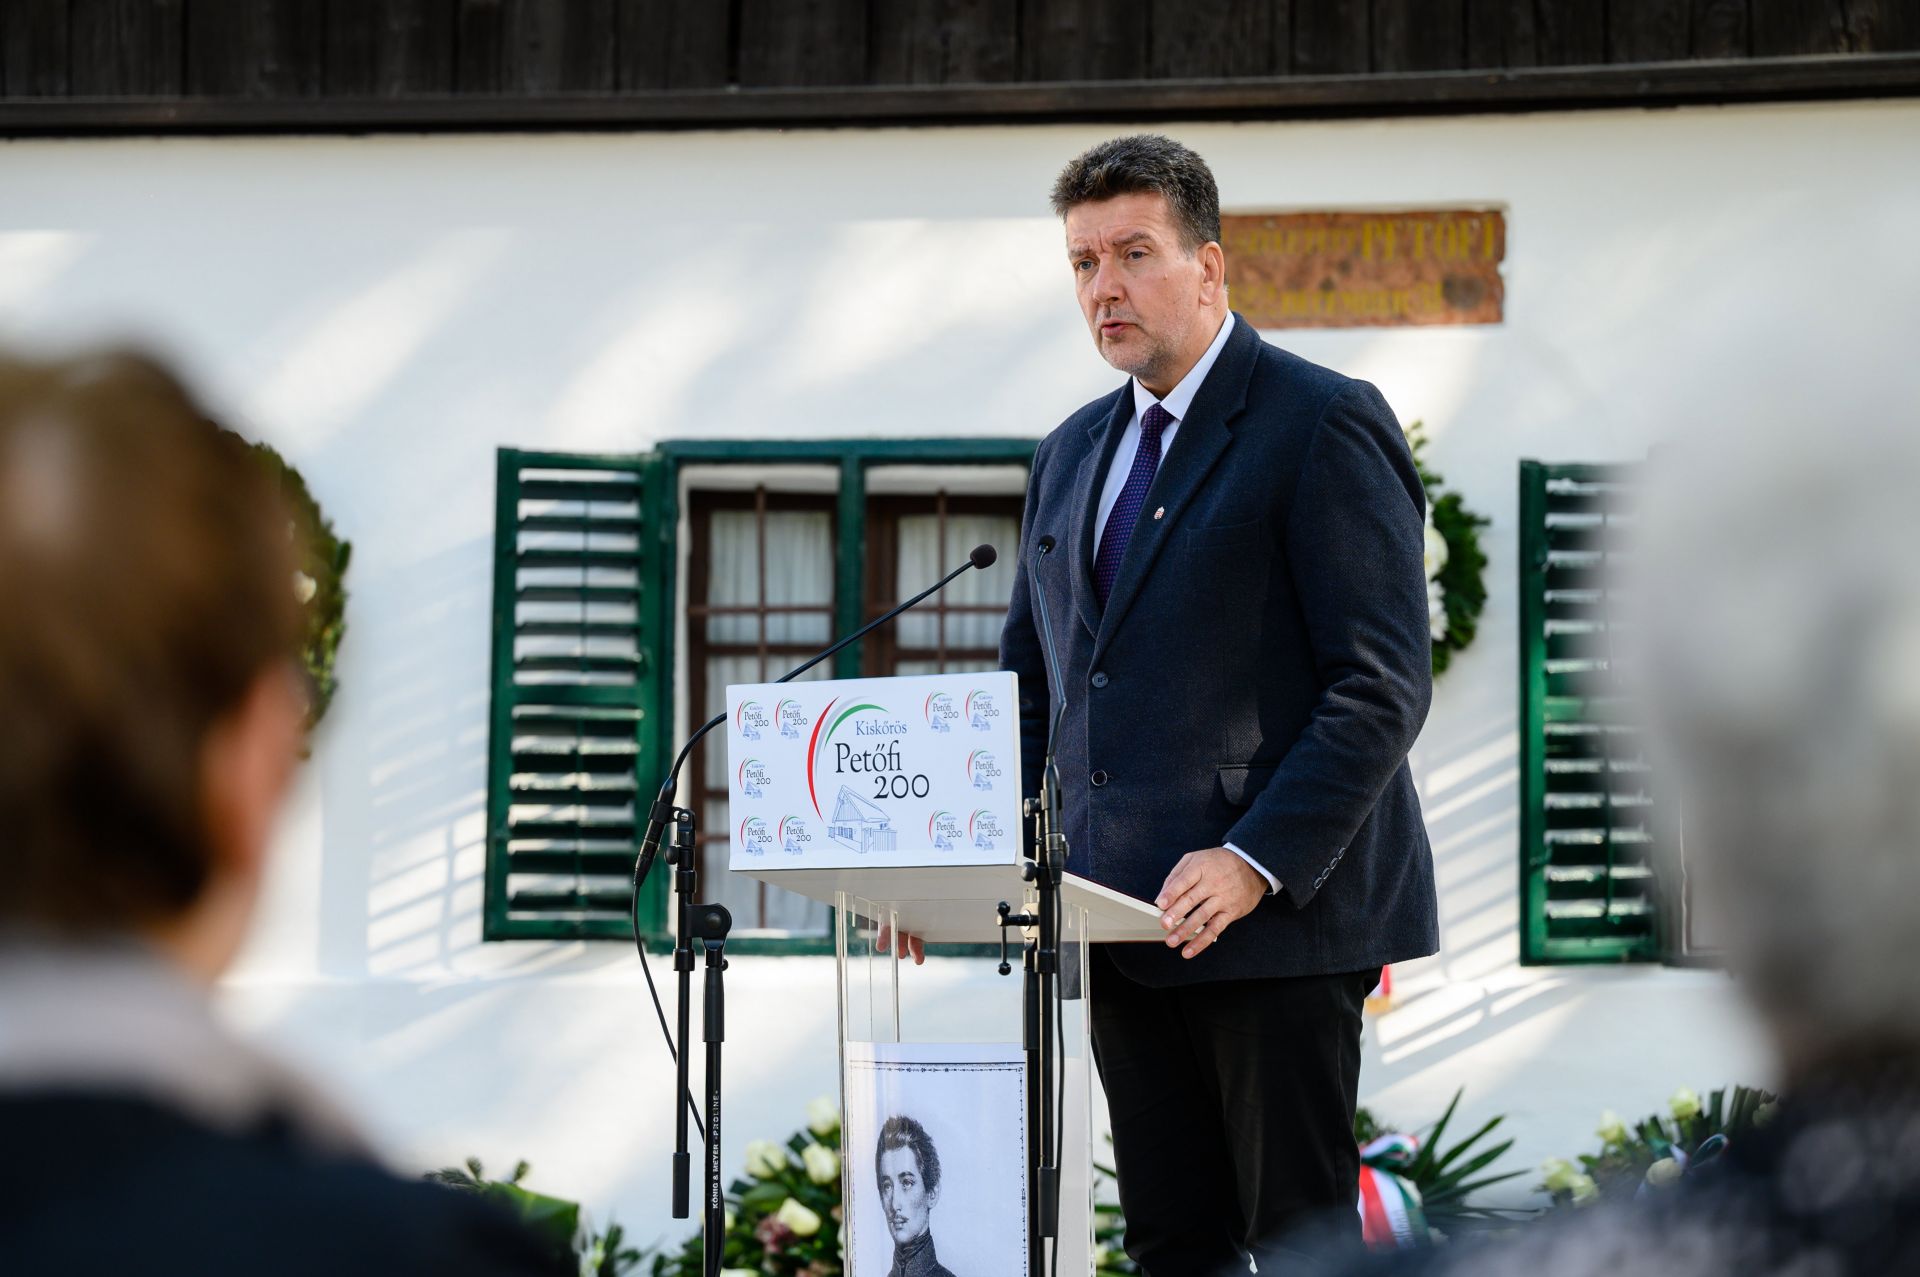 Felavatták a kiskőrösi Petőfi Szülőház és Emlékmúzeum történelmi emlékhellyé nyilvánítását jelző sztélét